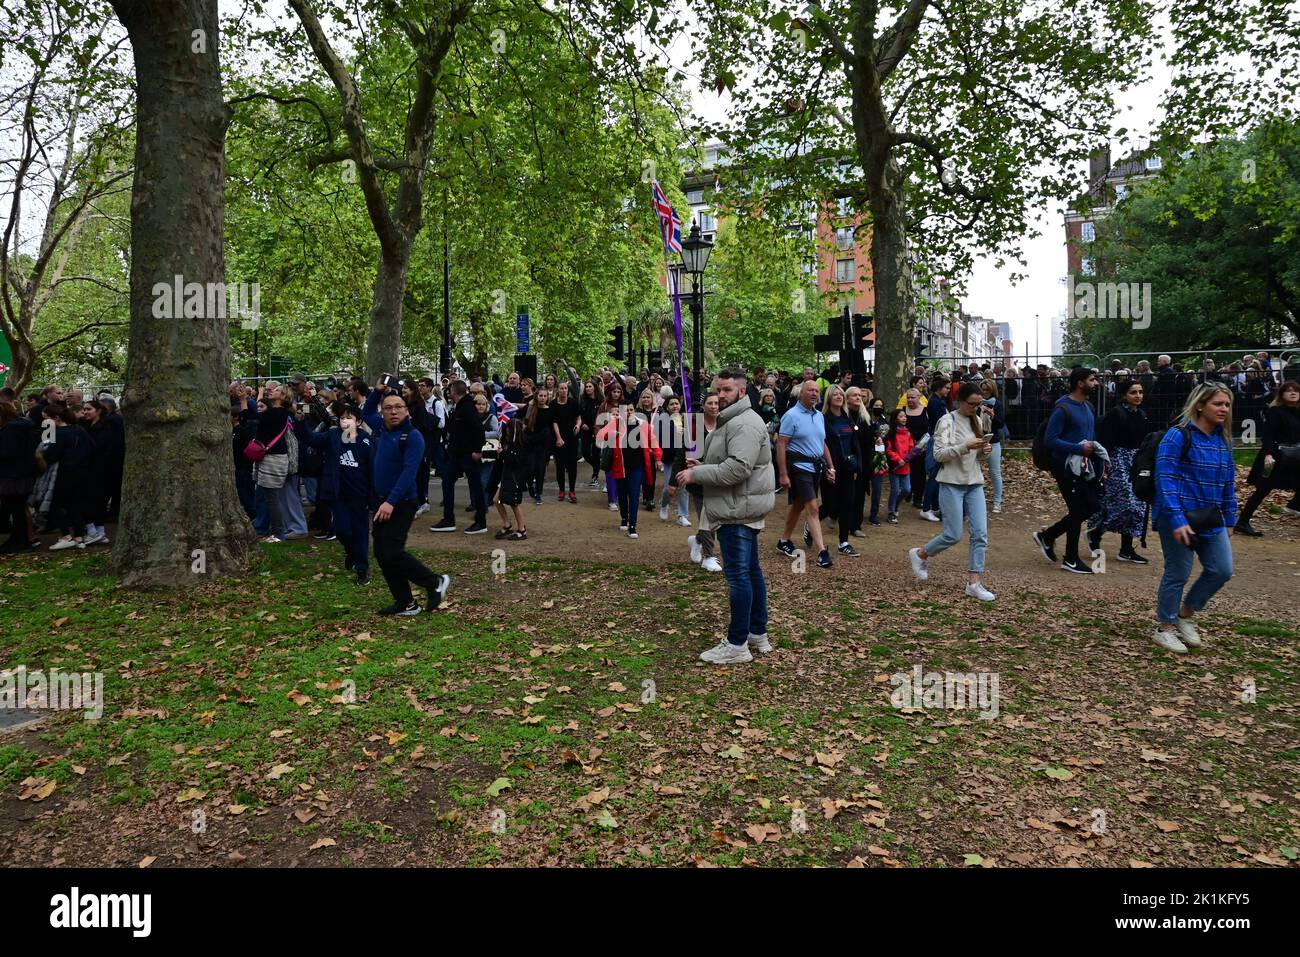 Funeral de Su Majestad la Reina Isabel II, Londres, Reino Unido, lunes 19th de septiembre de 2022. Multitudes de personas que se dirigen a Hyde Park para ver la proyección pública. Foto de stock